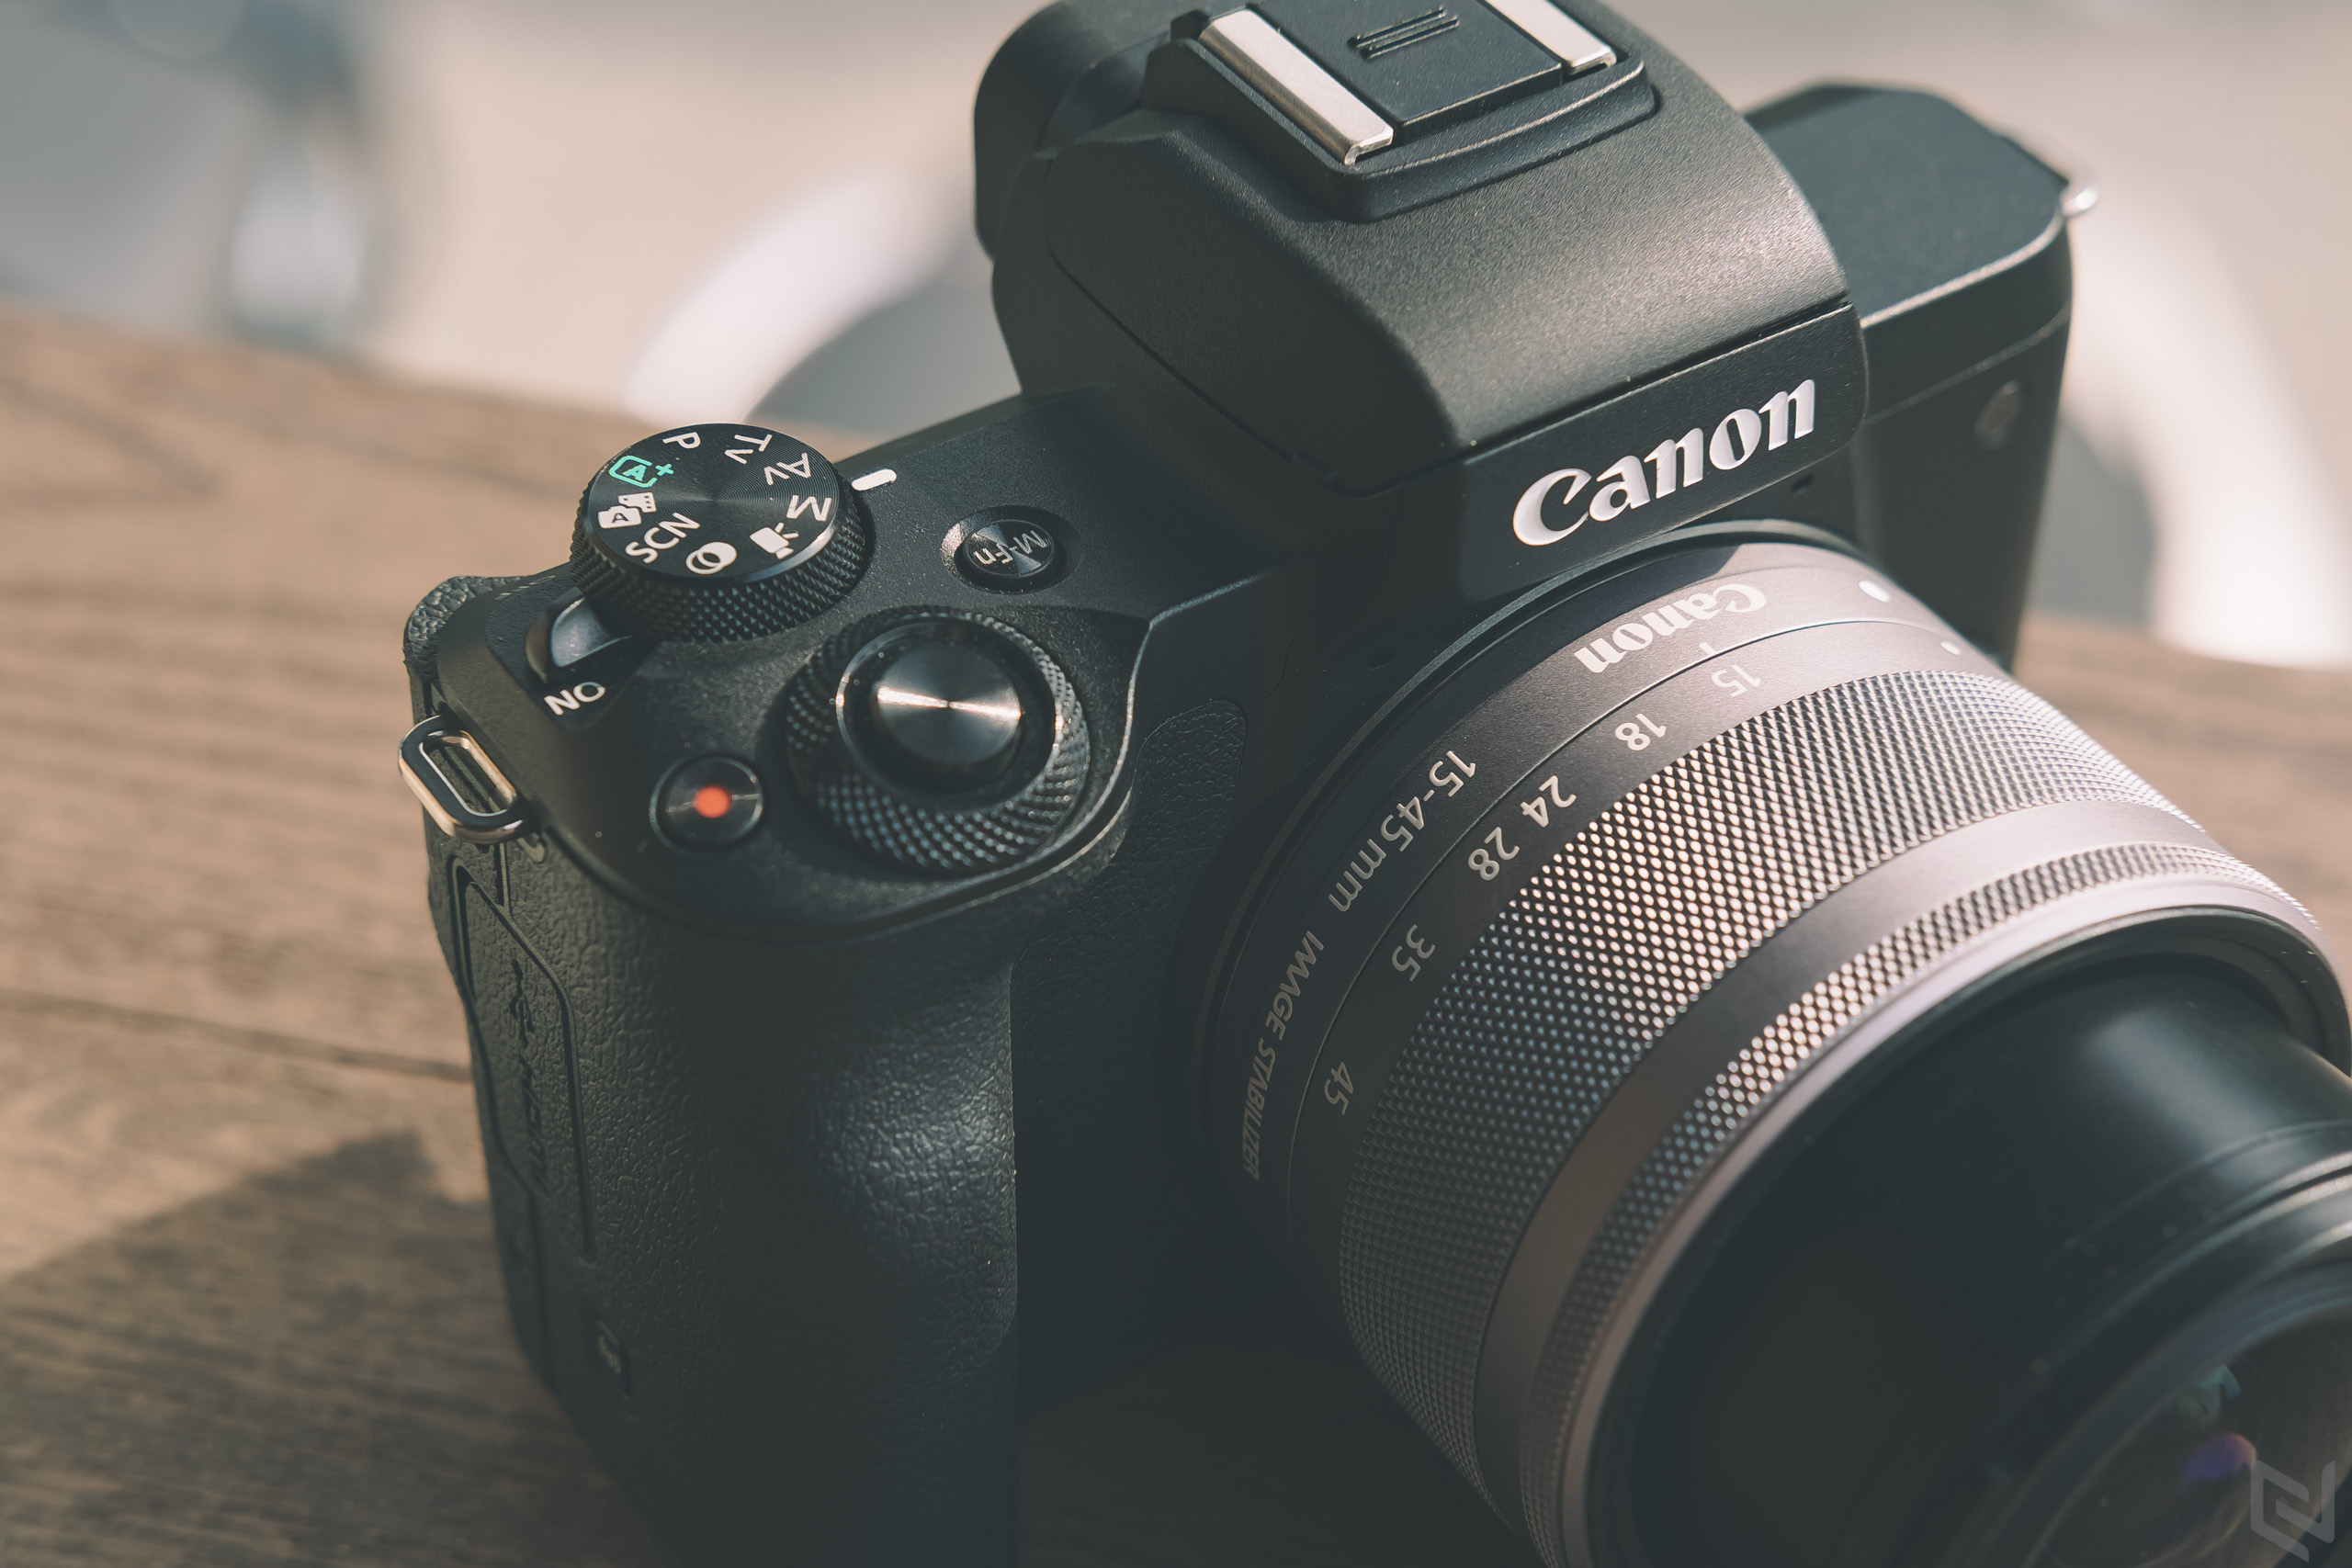 Rò rỉ thông số máy ảnh Canon EOS M50 Mark II sẽ sớm được ra mắt